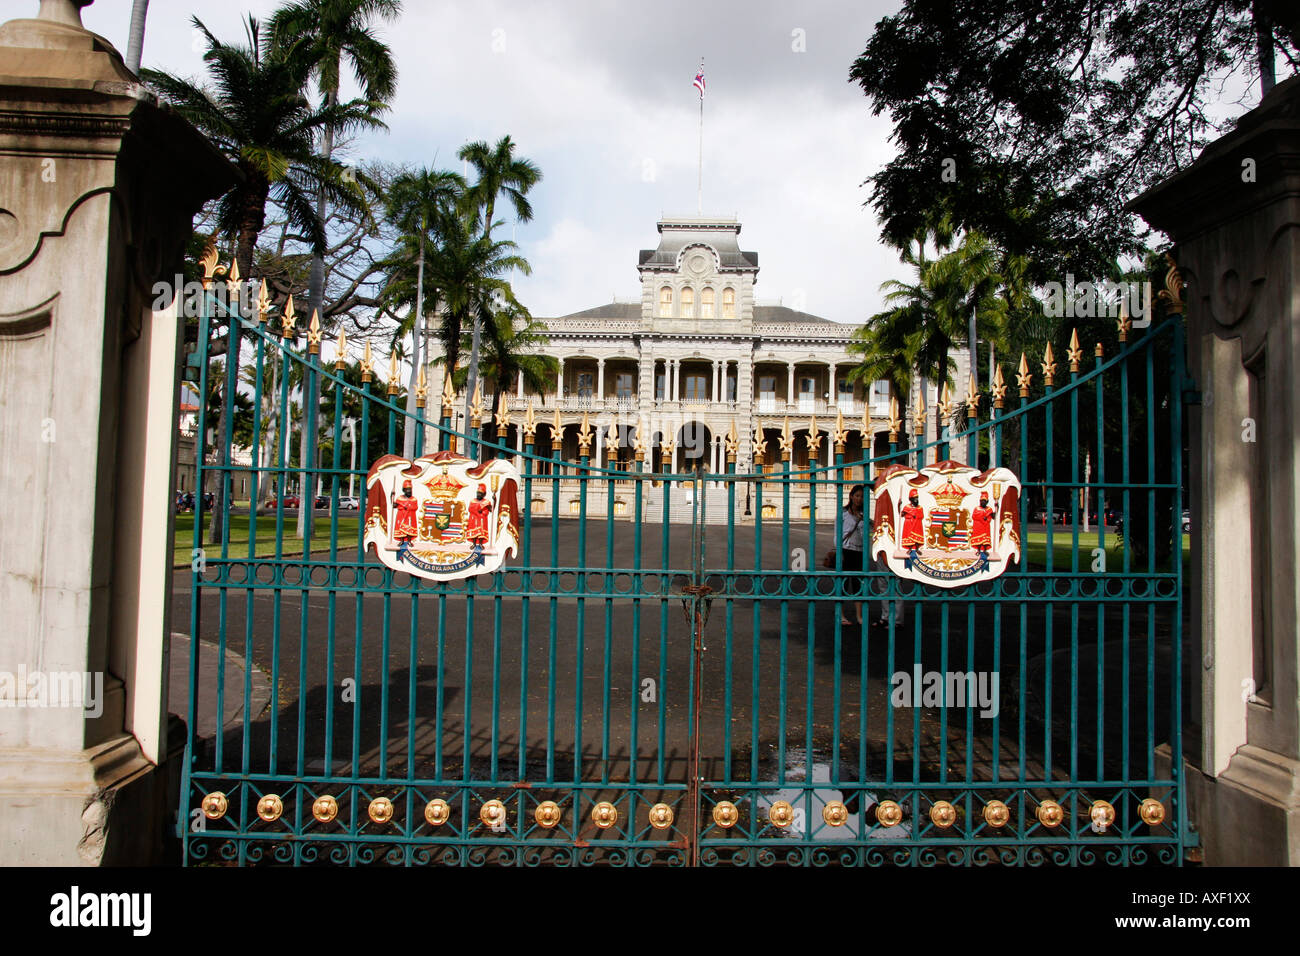 Die spektakuläre Iolani Palace in Honolulu auf der Insel Oahu Hawaii wurde 1882 erbaut und ist der einzige königliche Palast in den USA Stockfoto